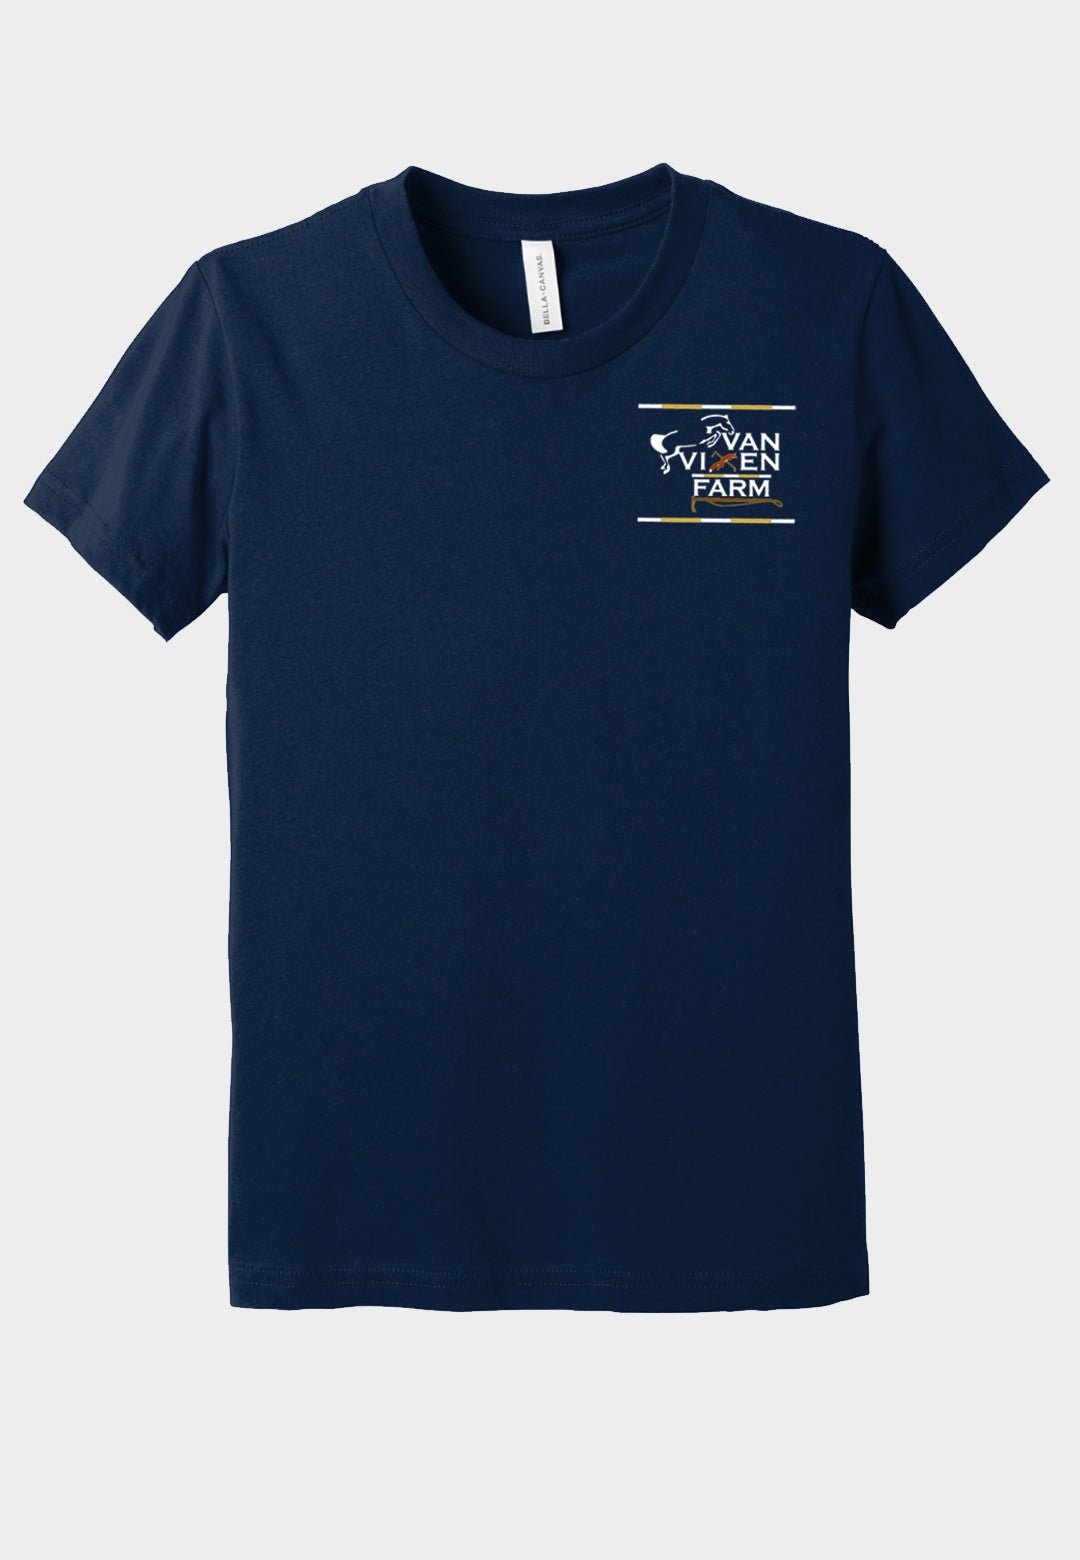 Van Vixen Farm BELLA+CANVAS ® Unisex Jersey Short Sleeve Tee - Adult/Youth Sizes